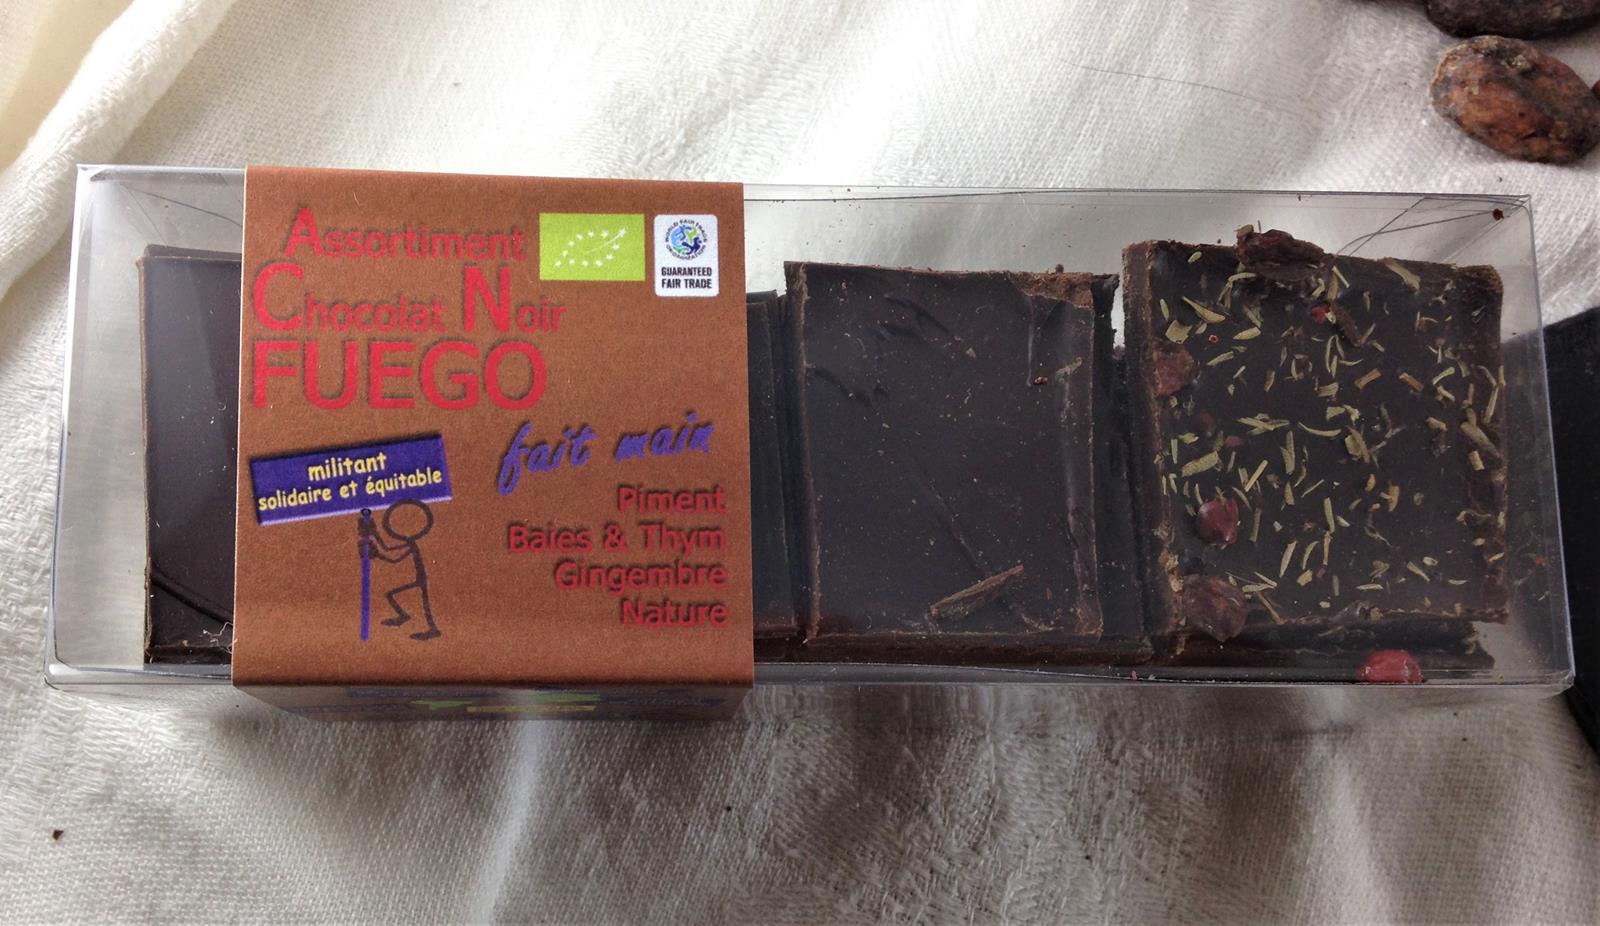 Lot de 2 boites de dégustation de Chocolat bio 75% cacao - Bouga Cacao